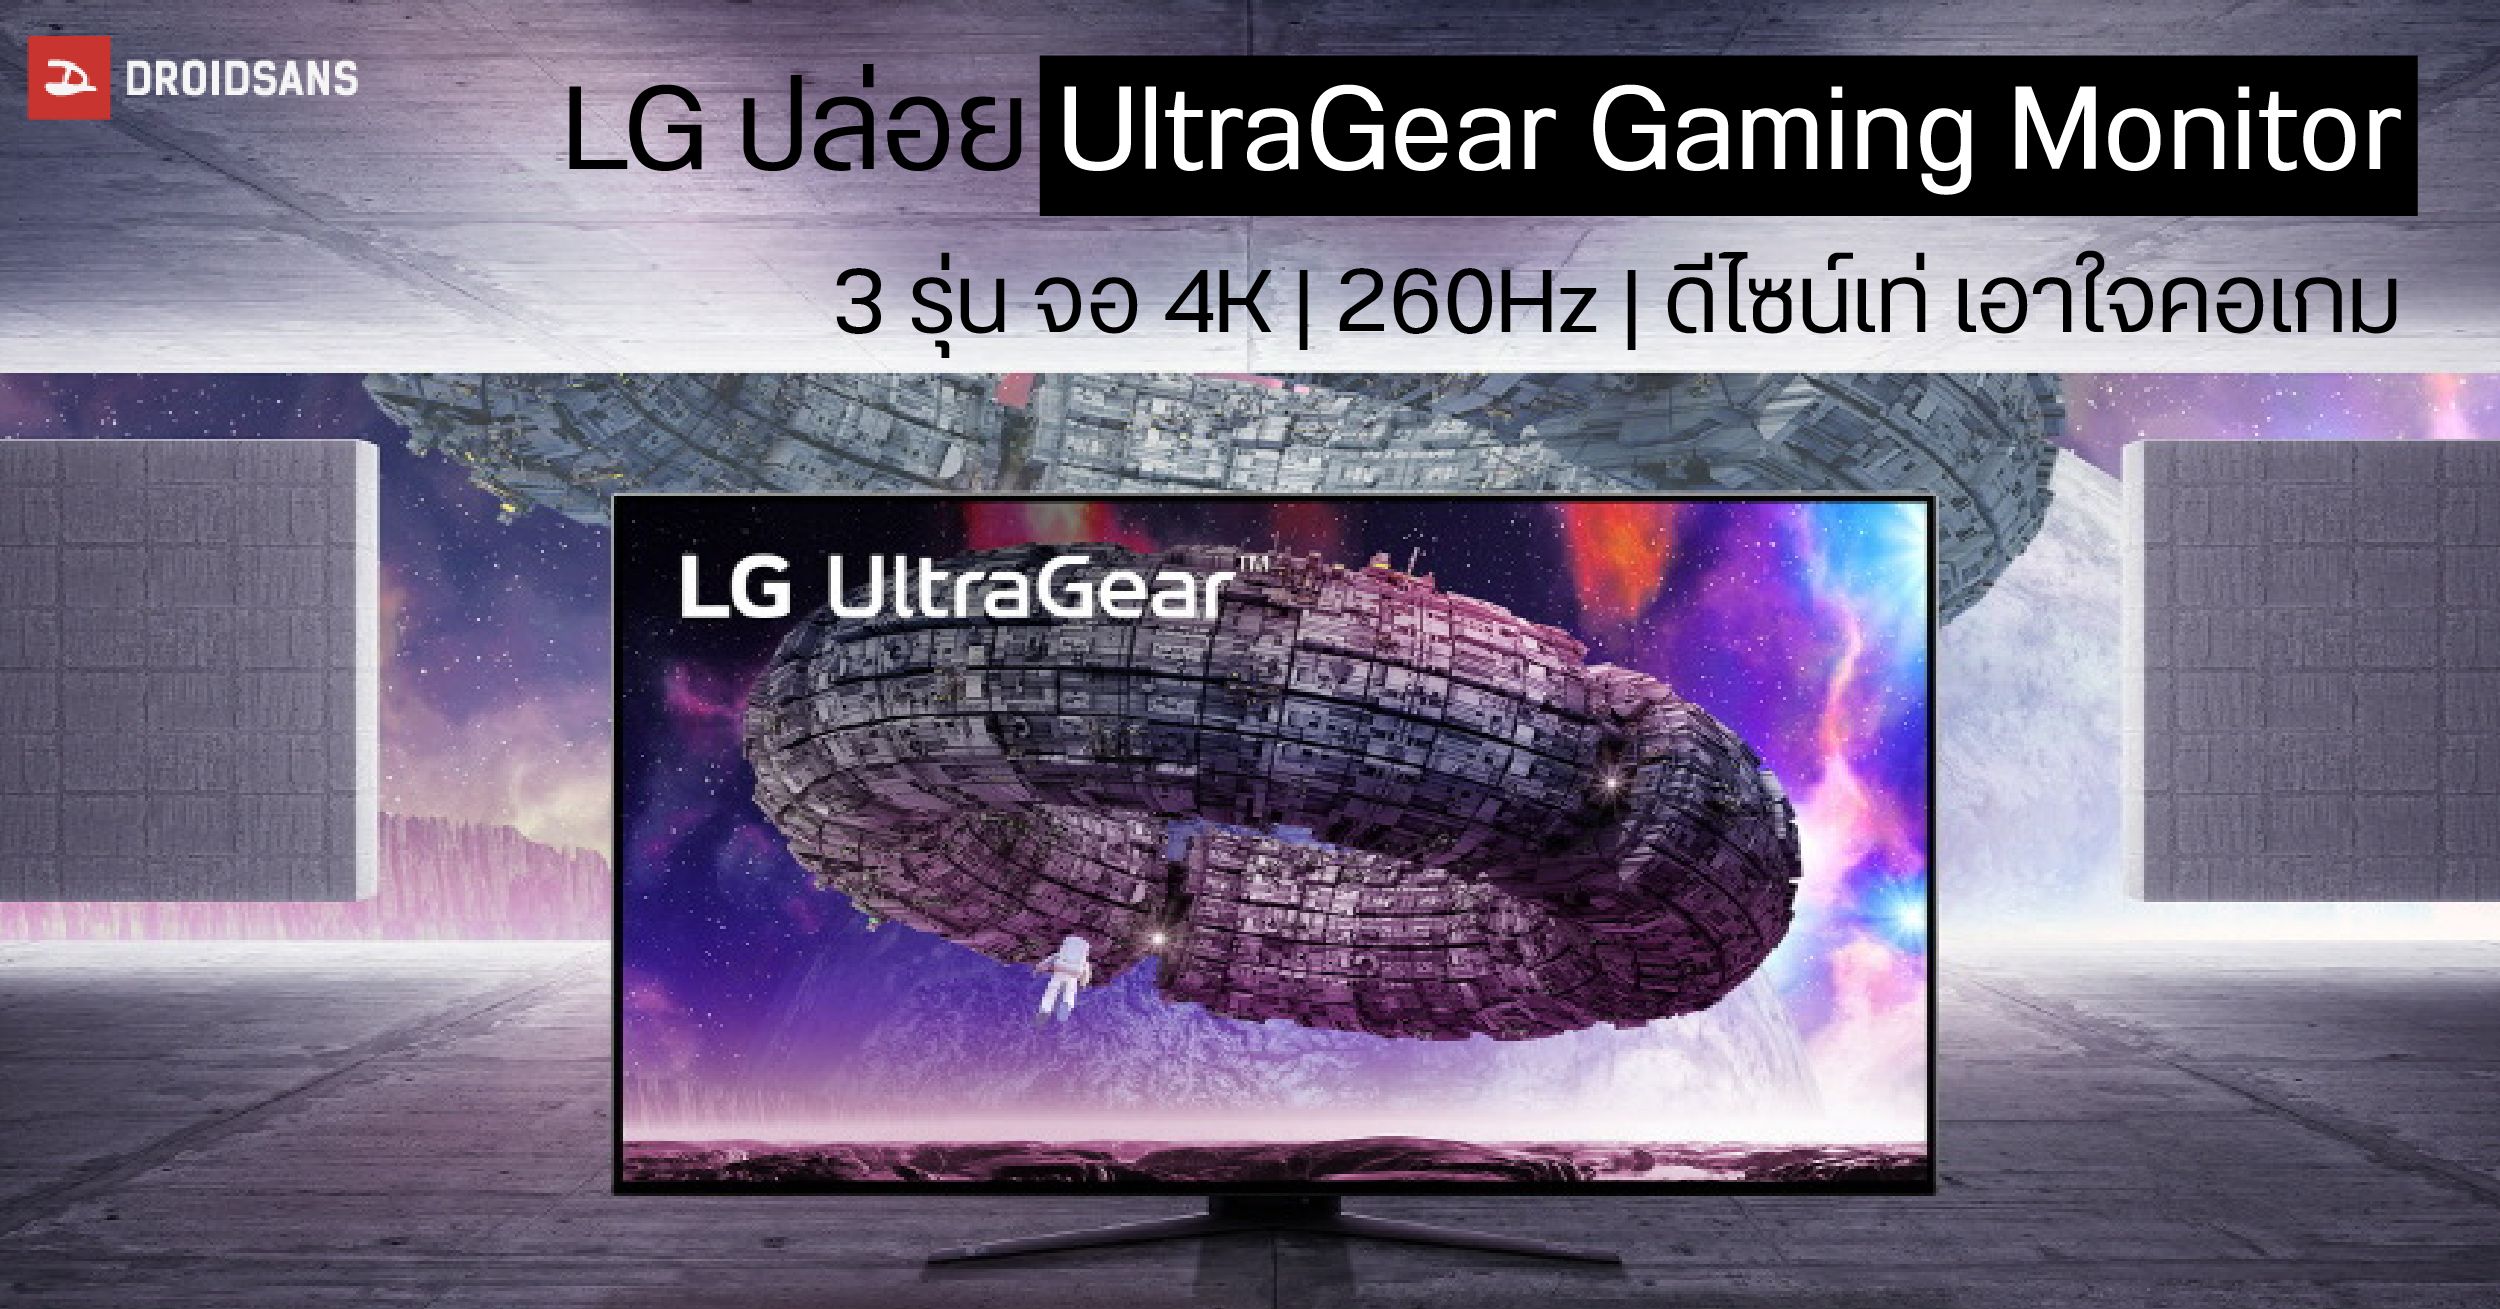 LG เอาใจคอเกมปล่อย UltraGear Gaming Monitor ใหม่ 3 รุ่น ความละเอียด 4K รีเฟรชเรท 260Hz ดีไซน์เท่มีเอกลักษณ์